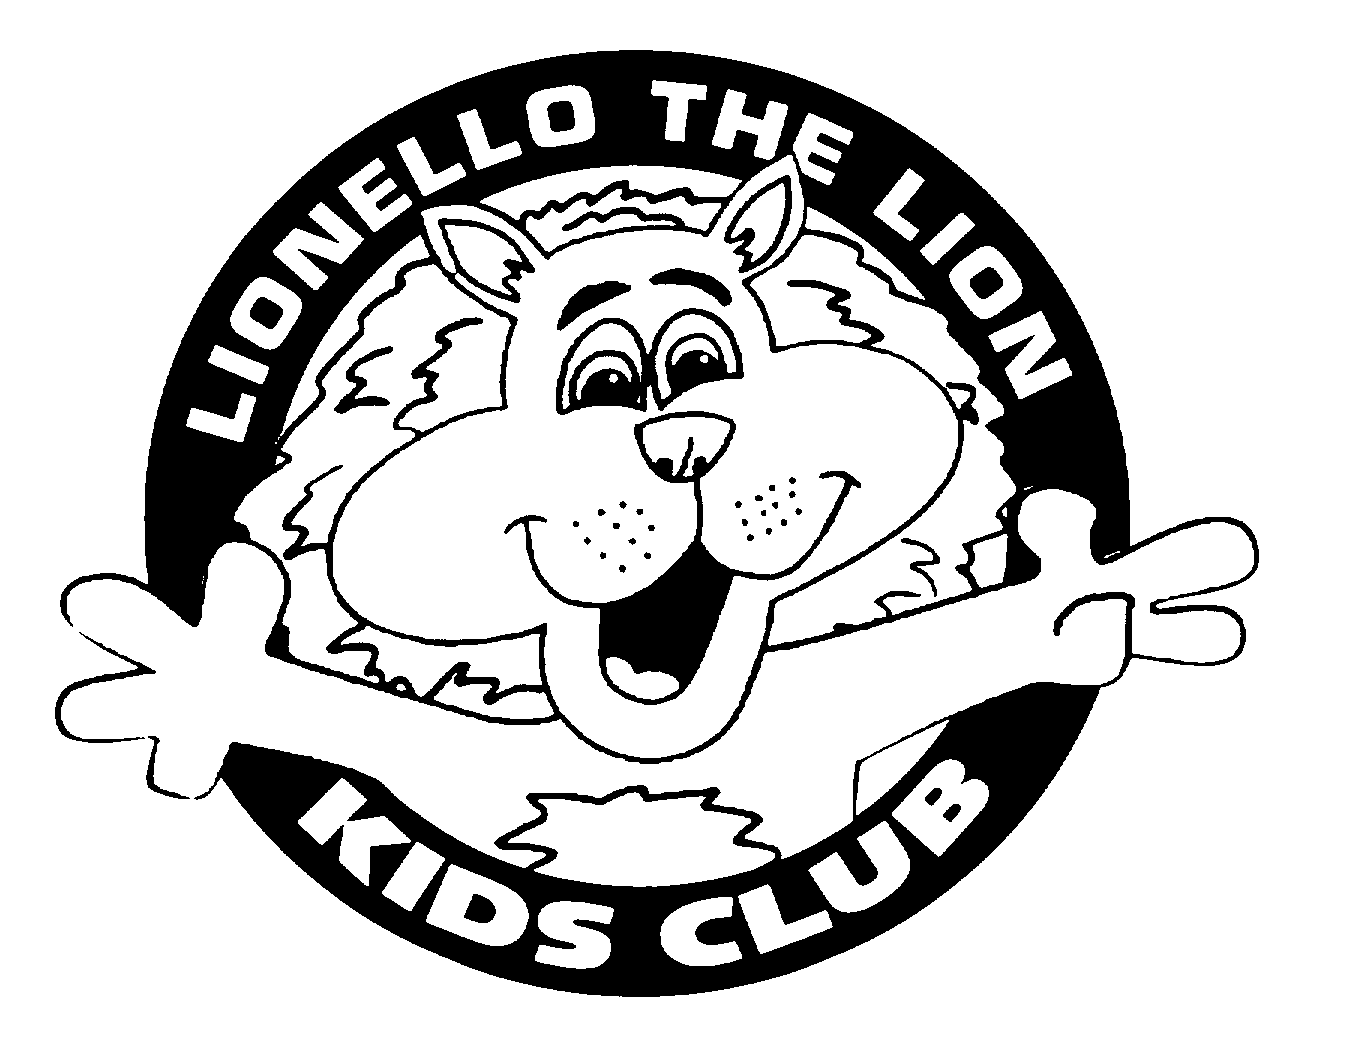  LIONELLO THE LION KIDS CLUB